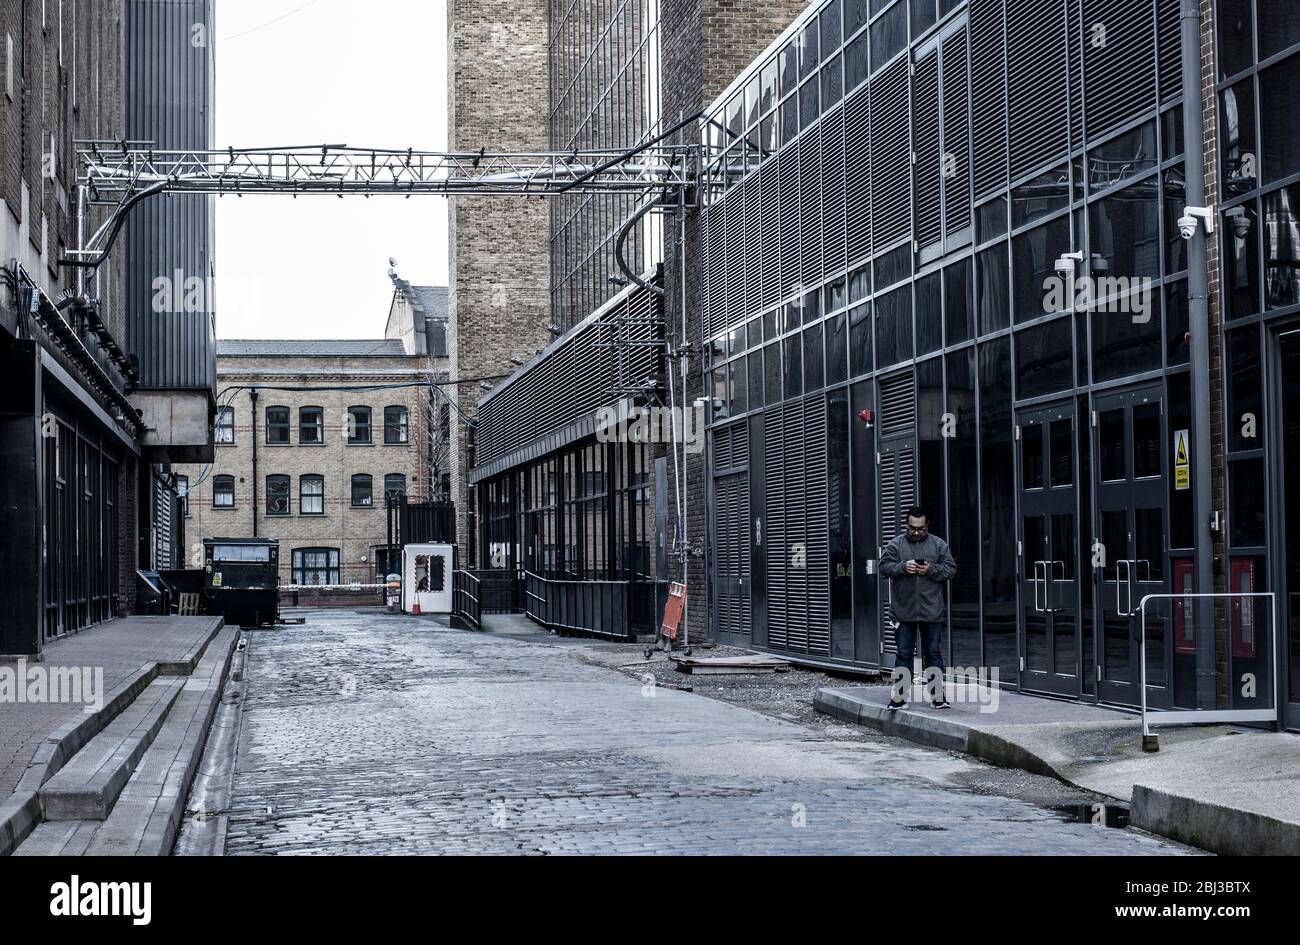 Ein Mann in grauer Kleidung steht einsam inmitten eines Industrieanwesens in East London, wo die Gebäude die gleichen Farben wie seine Kleidung haben. Stockfoto